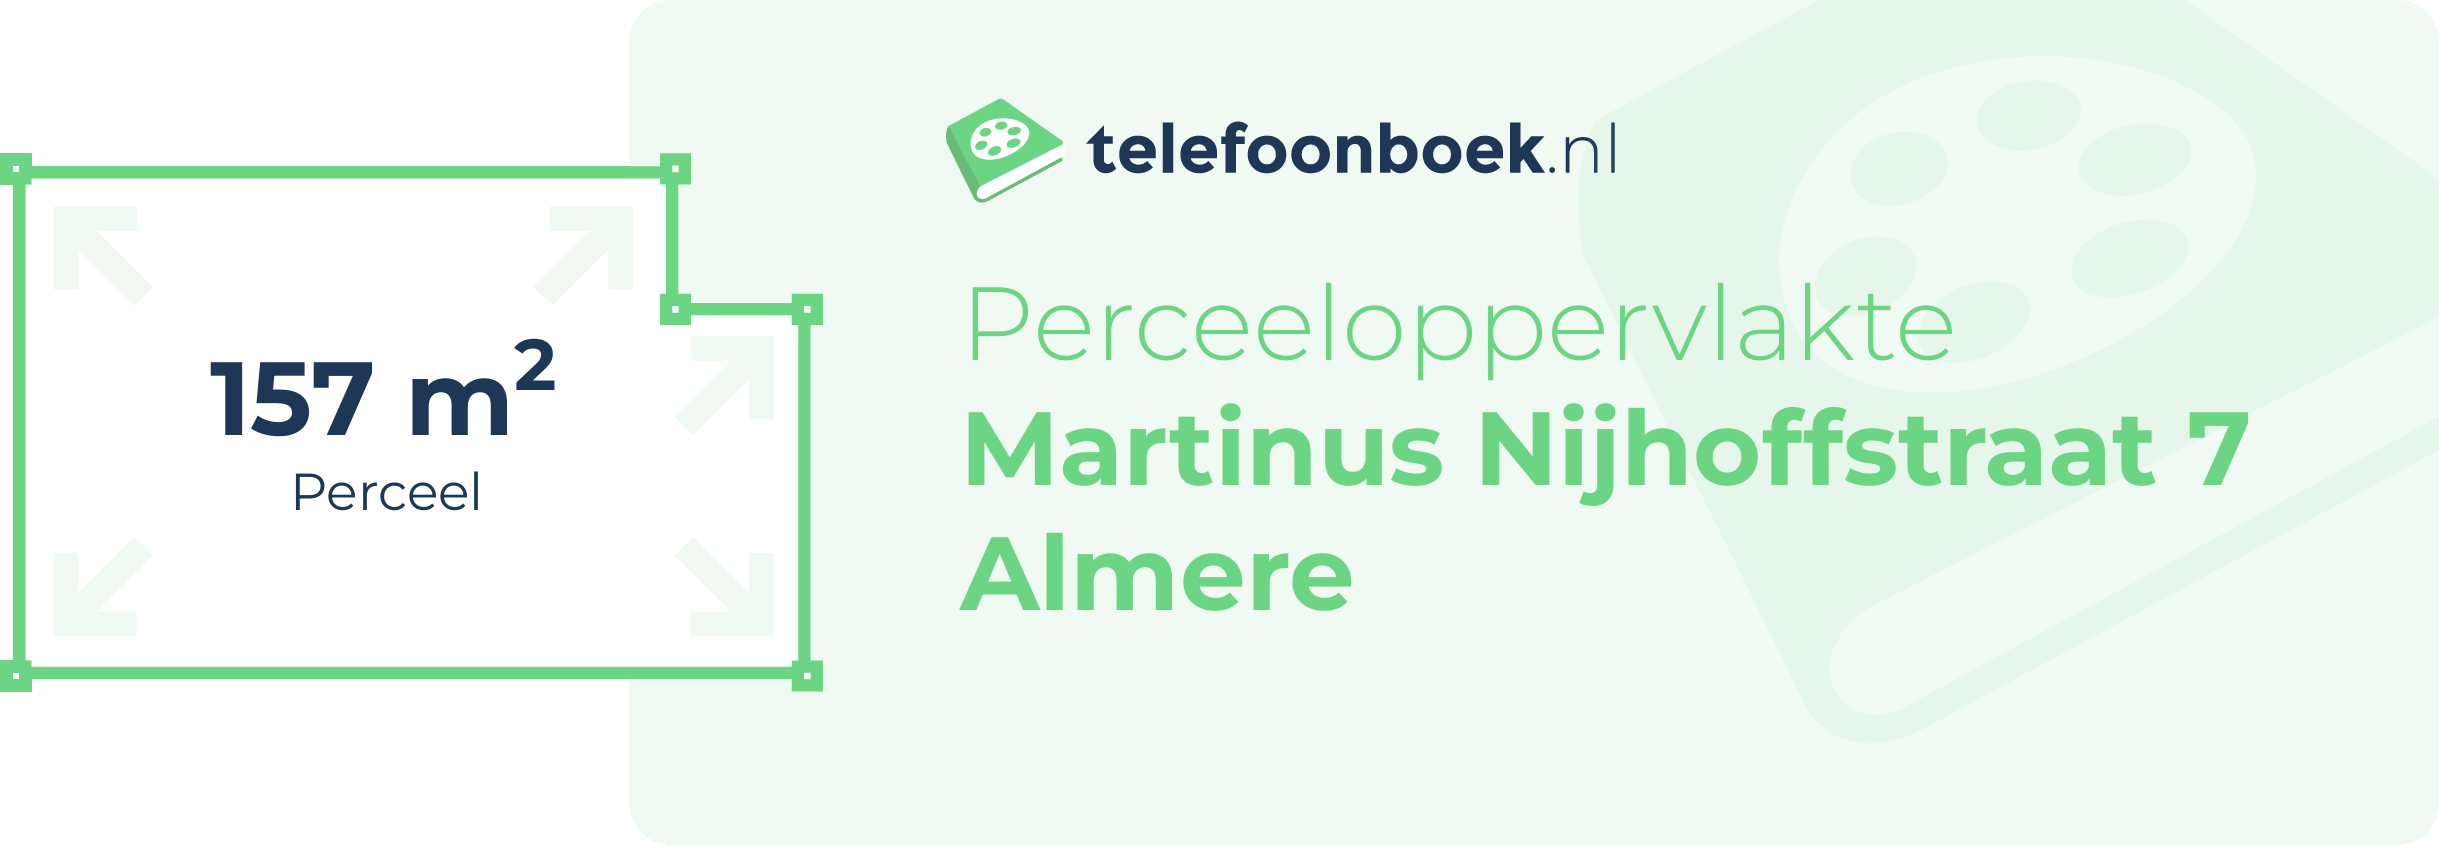 Perceeloppervlakte Martinus Nijhoffstraat 7 Almere